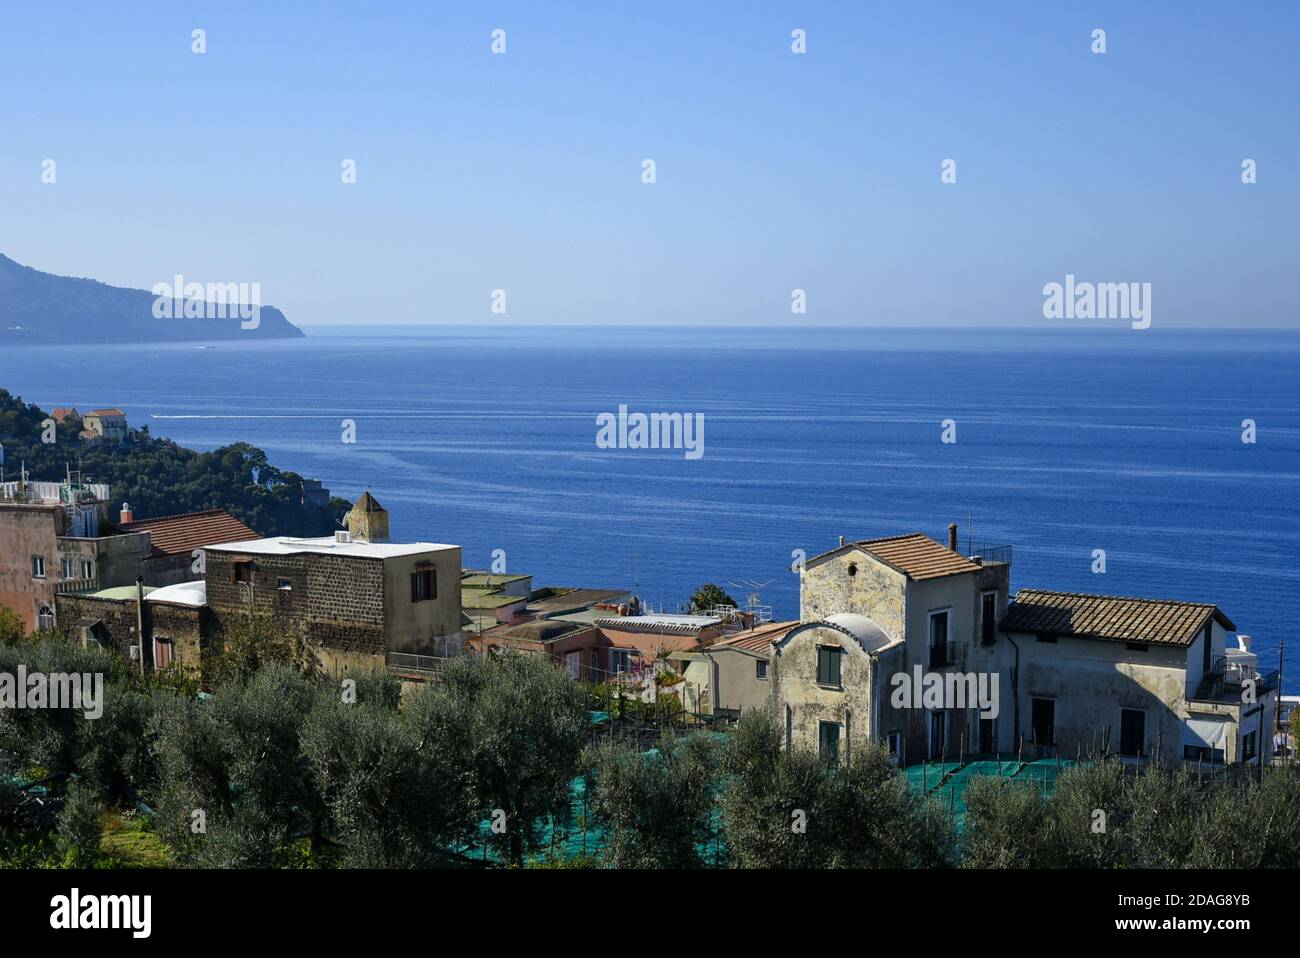 Vista panoramica della costa in provincia di Napoli. Foto Stock